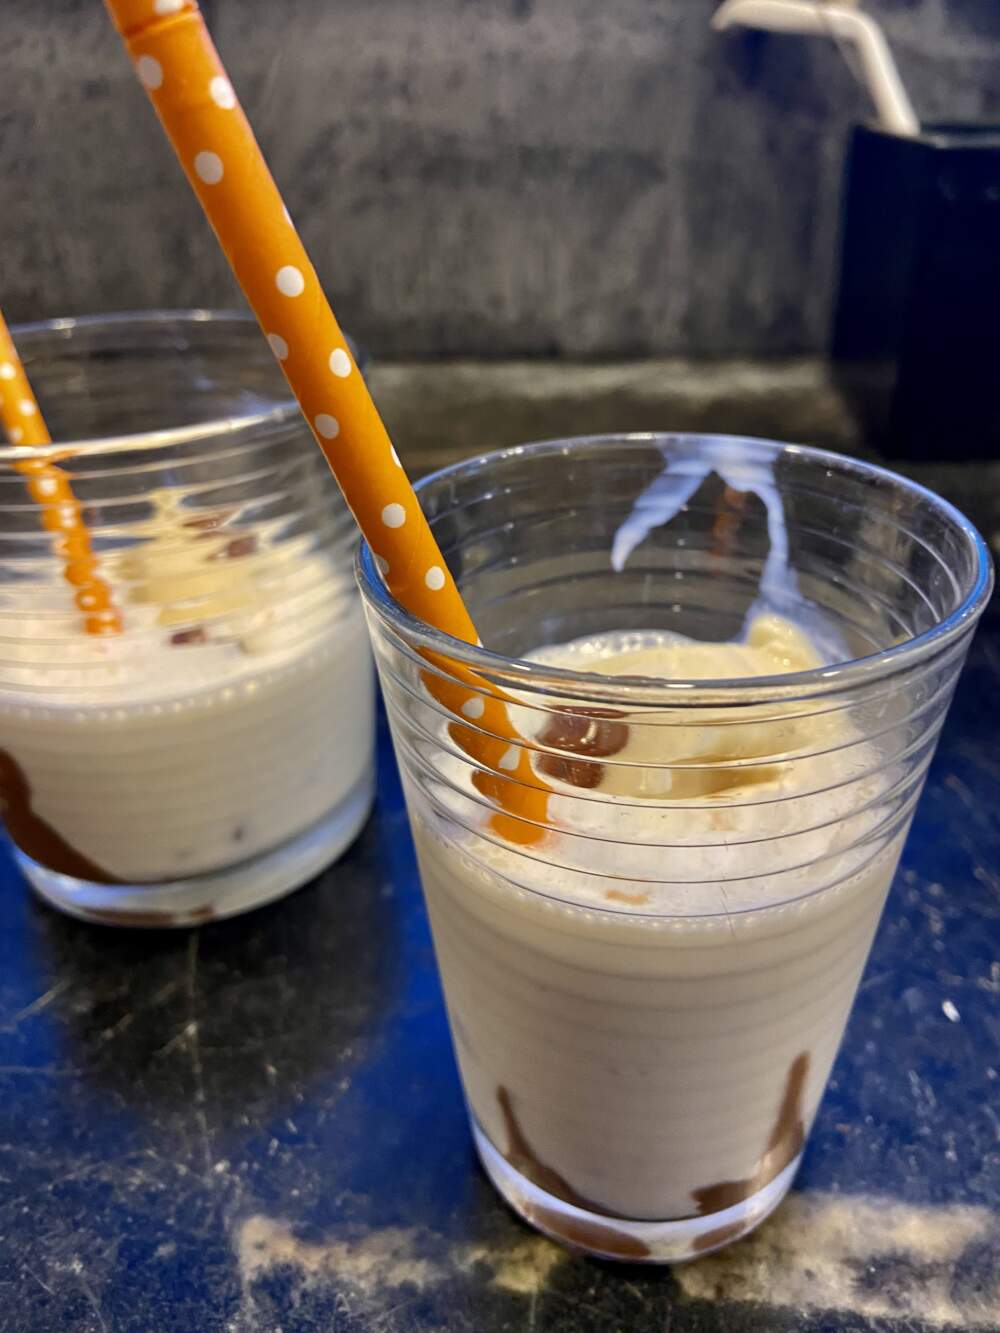 Vanilla milkshake with chocolate swirl. (Kathy Gunst/Here & Now)